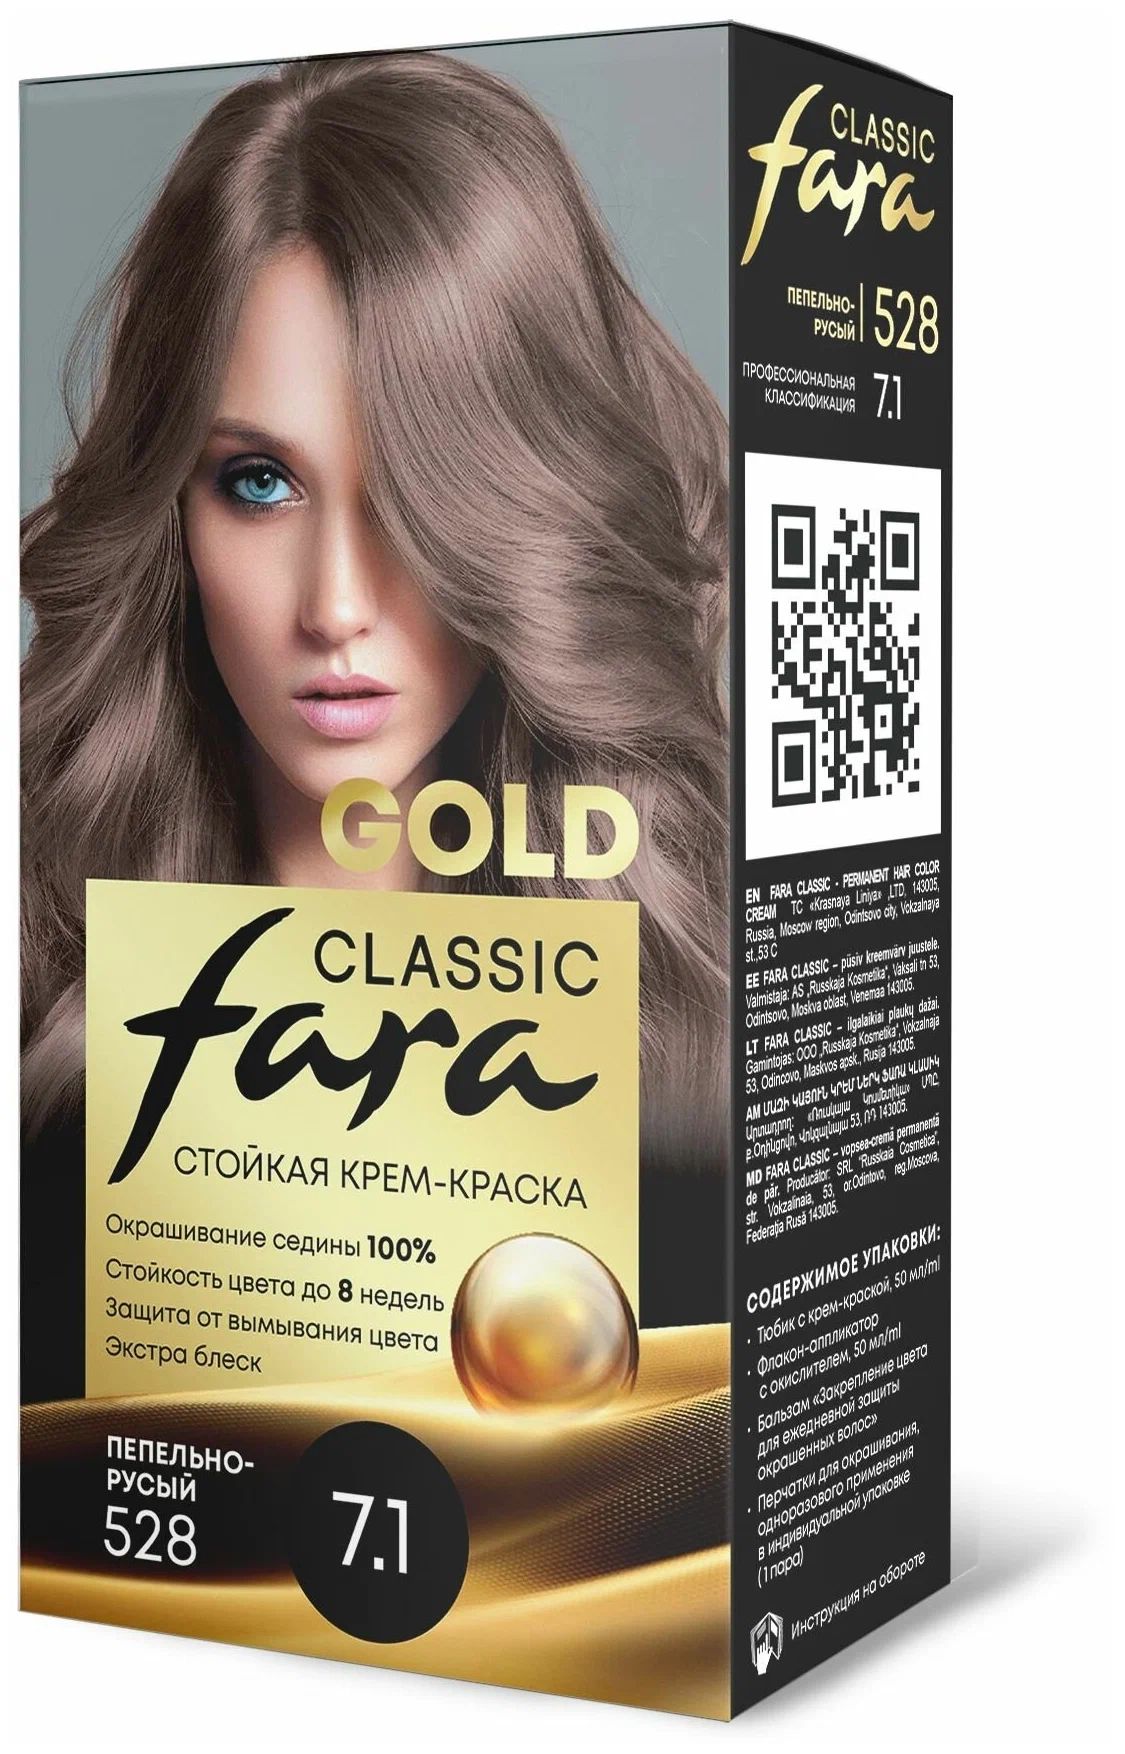 Крем-краска для волос Fara Classic Gold 528 пепельно-русый 7.1, 140 г сборник статей к 85 летию в с храковского